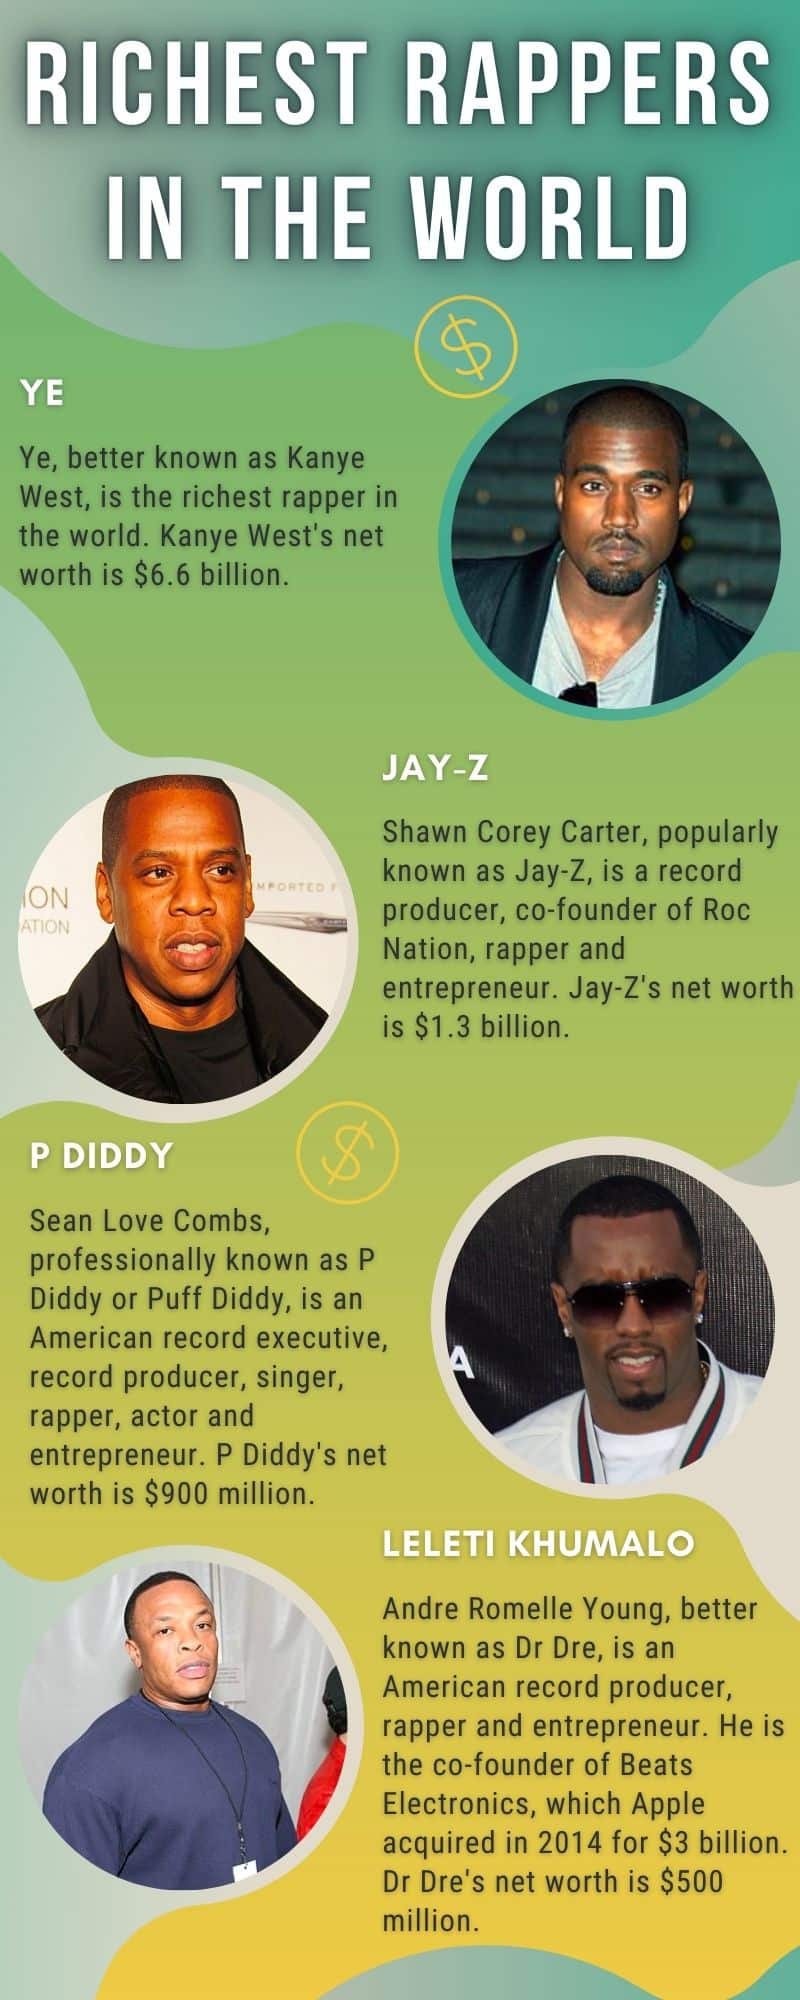 He's a Business, Man: Jay Z vs. 50 Cent